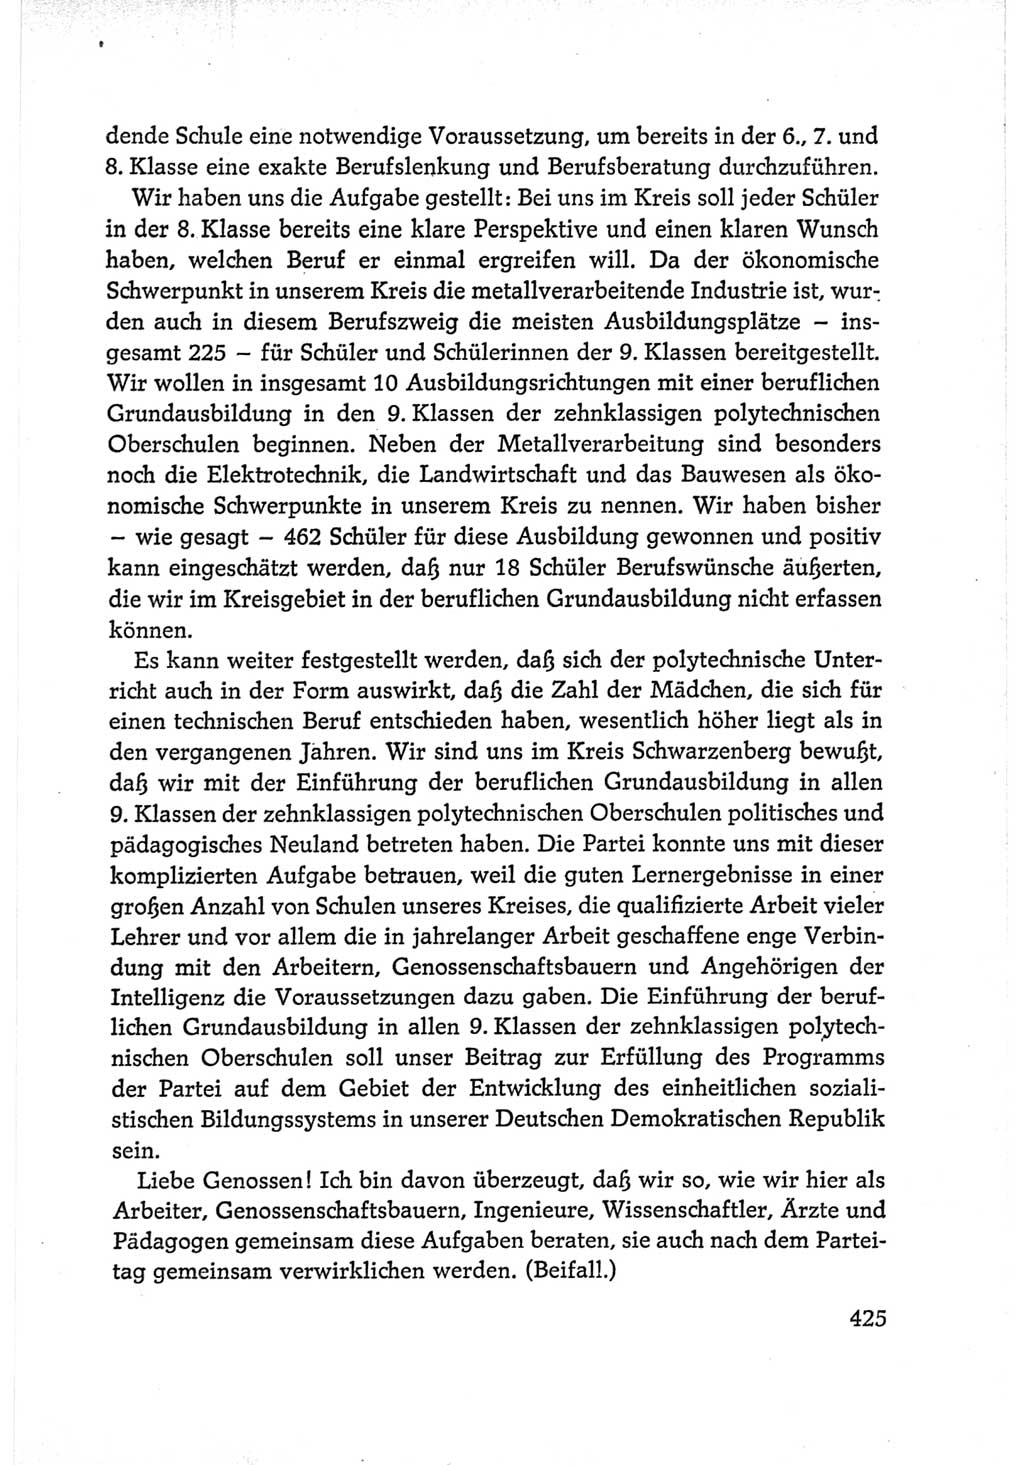 Protokoll der Verhandlungen des Ⅵ. Parteitages der Sozialistischen Einheitspartei Deutschlands (SED) [Deutsche Demokratische Republik (DDR)] 1963, Band Ⅰ, Seite 425 (Prot. Verh. Ⅵ. PT SED DDR 1963, Bd. Ⅰ, S. 425)